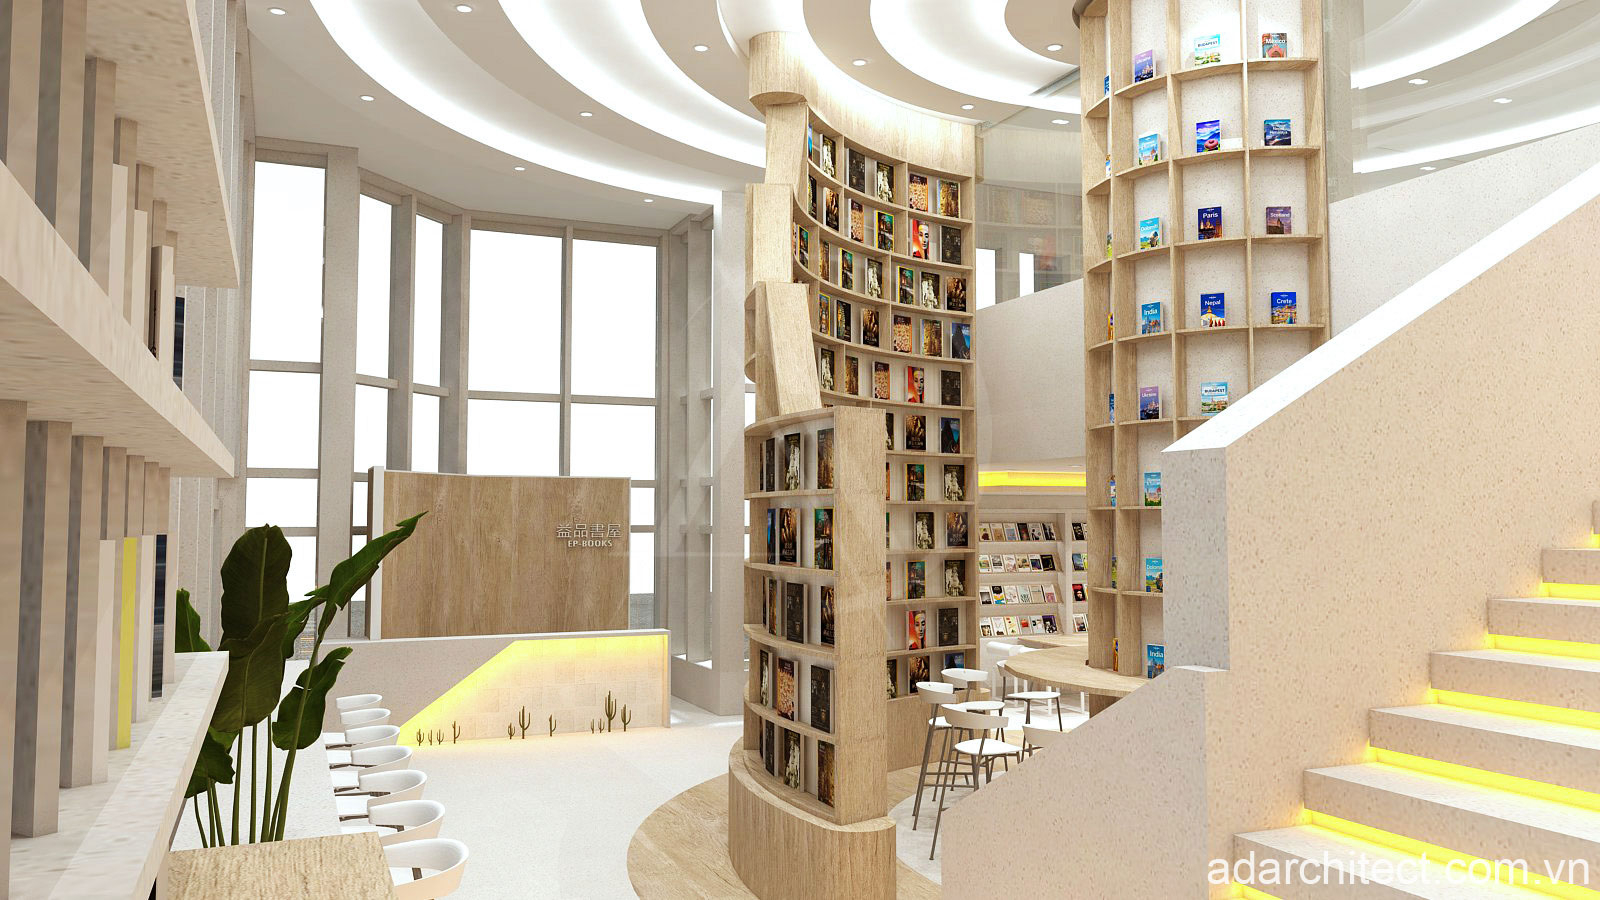 Sử dụng gam màu trắng, sáng kết hợp nội thất bằng gỗ tôn lên sự tinh tế cho nhà sách